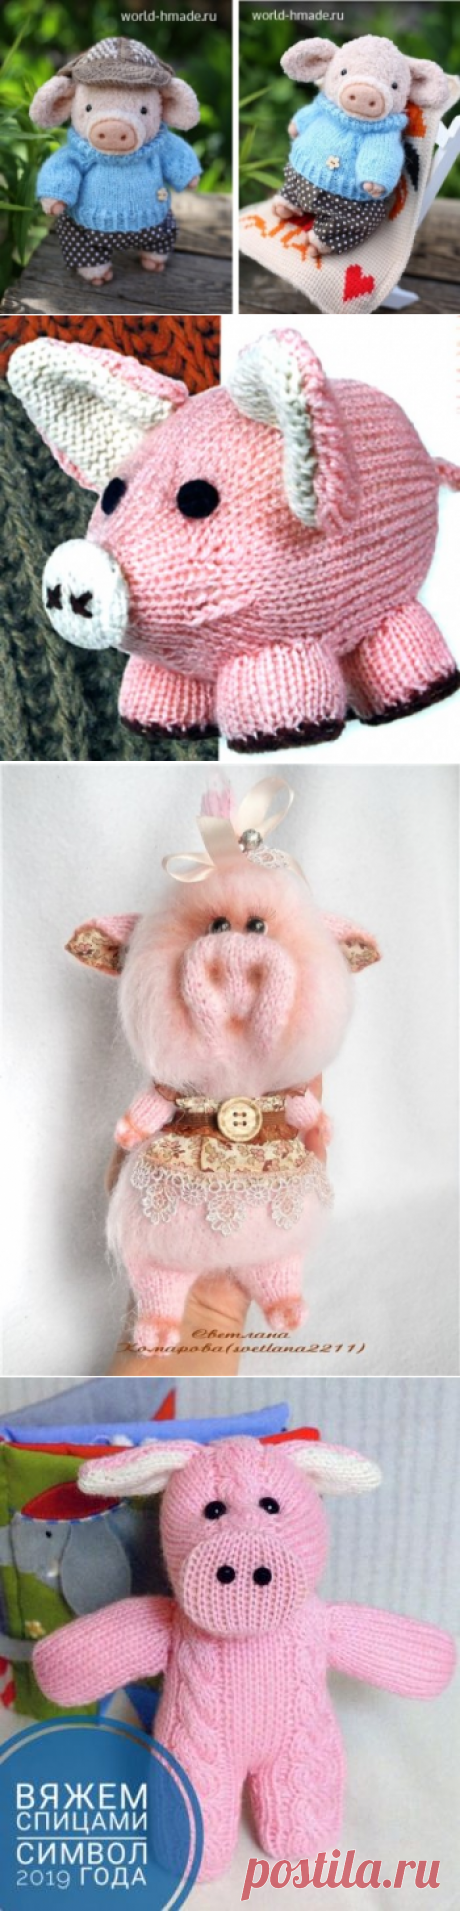 Хрюшки, свинки спицами символ 2019 года, 7 моделей с описанием, Вязаные игрушки